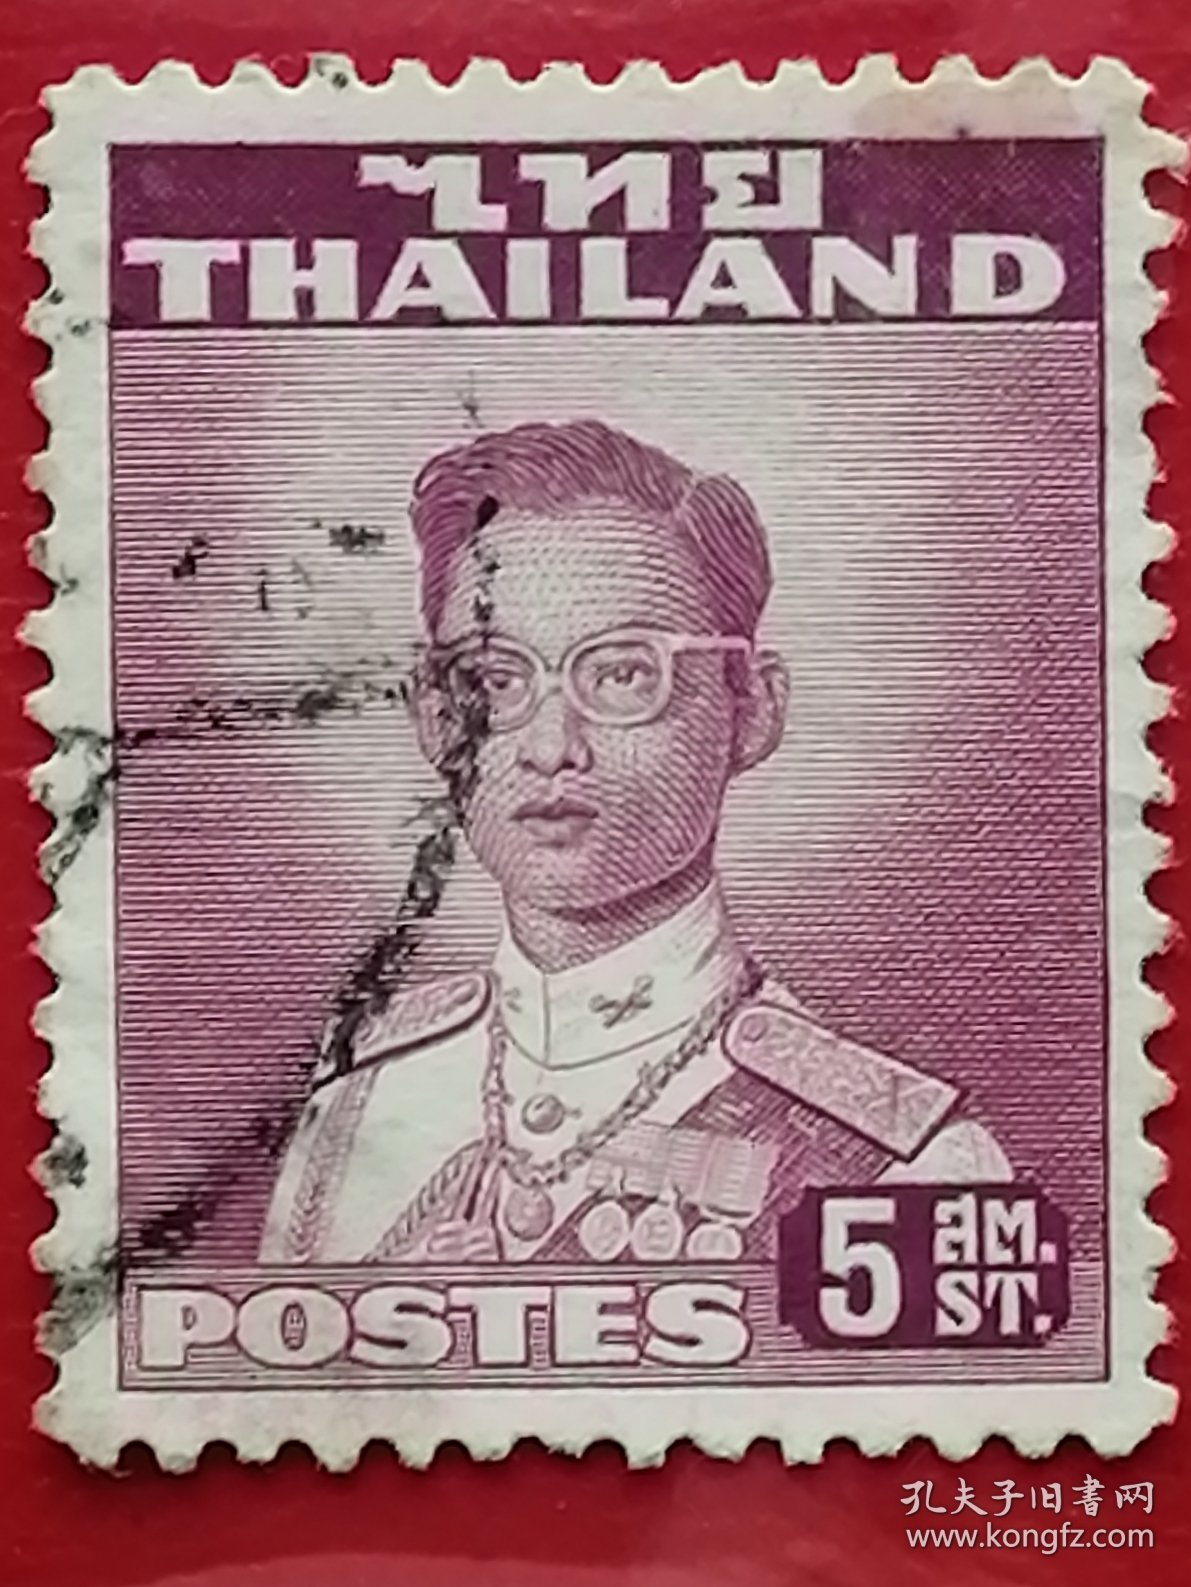 泰国邮票 1951-1960年 泰王普密蓬·阿杜德 拉玛九世国王 14-1 信销（1927年12月5日—2016年10月13日）泰国却克里王朝（曼谷王朝）第九位国王、王室最高领导者、国家元首、皇家军队最高统帅、佛教最高护法与宗教最高护卫者。 泰国历史上在位时间最长的国王，也是有确切记录的世界历史上在位时间第三长的独立主权国家君主他在位期间勤政爱民，被尊称为“国父”。